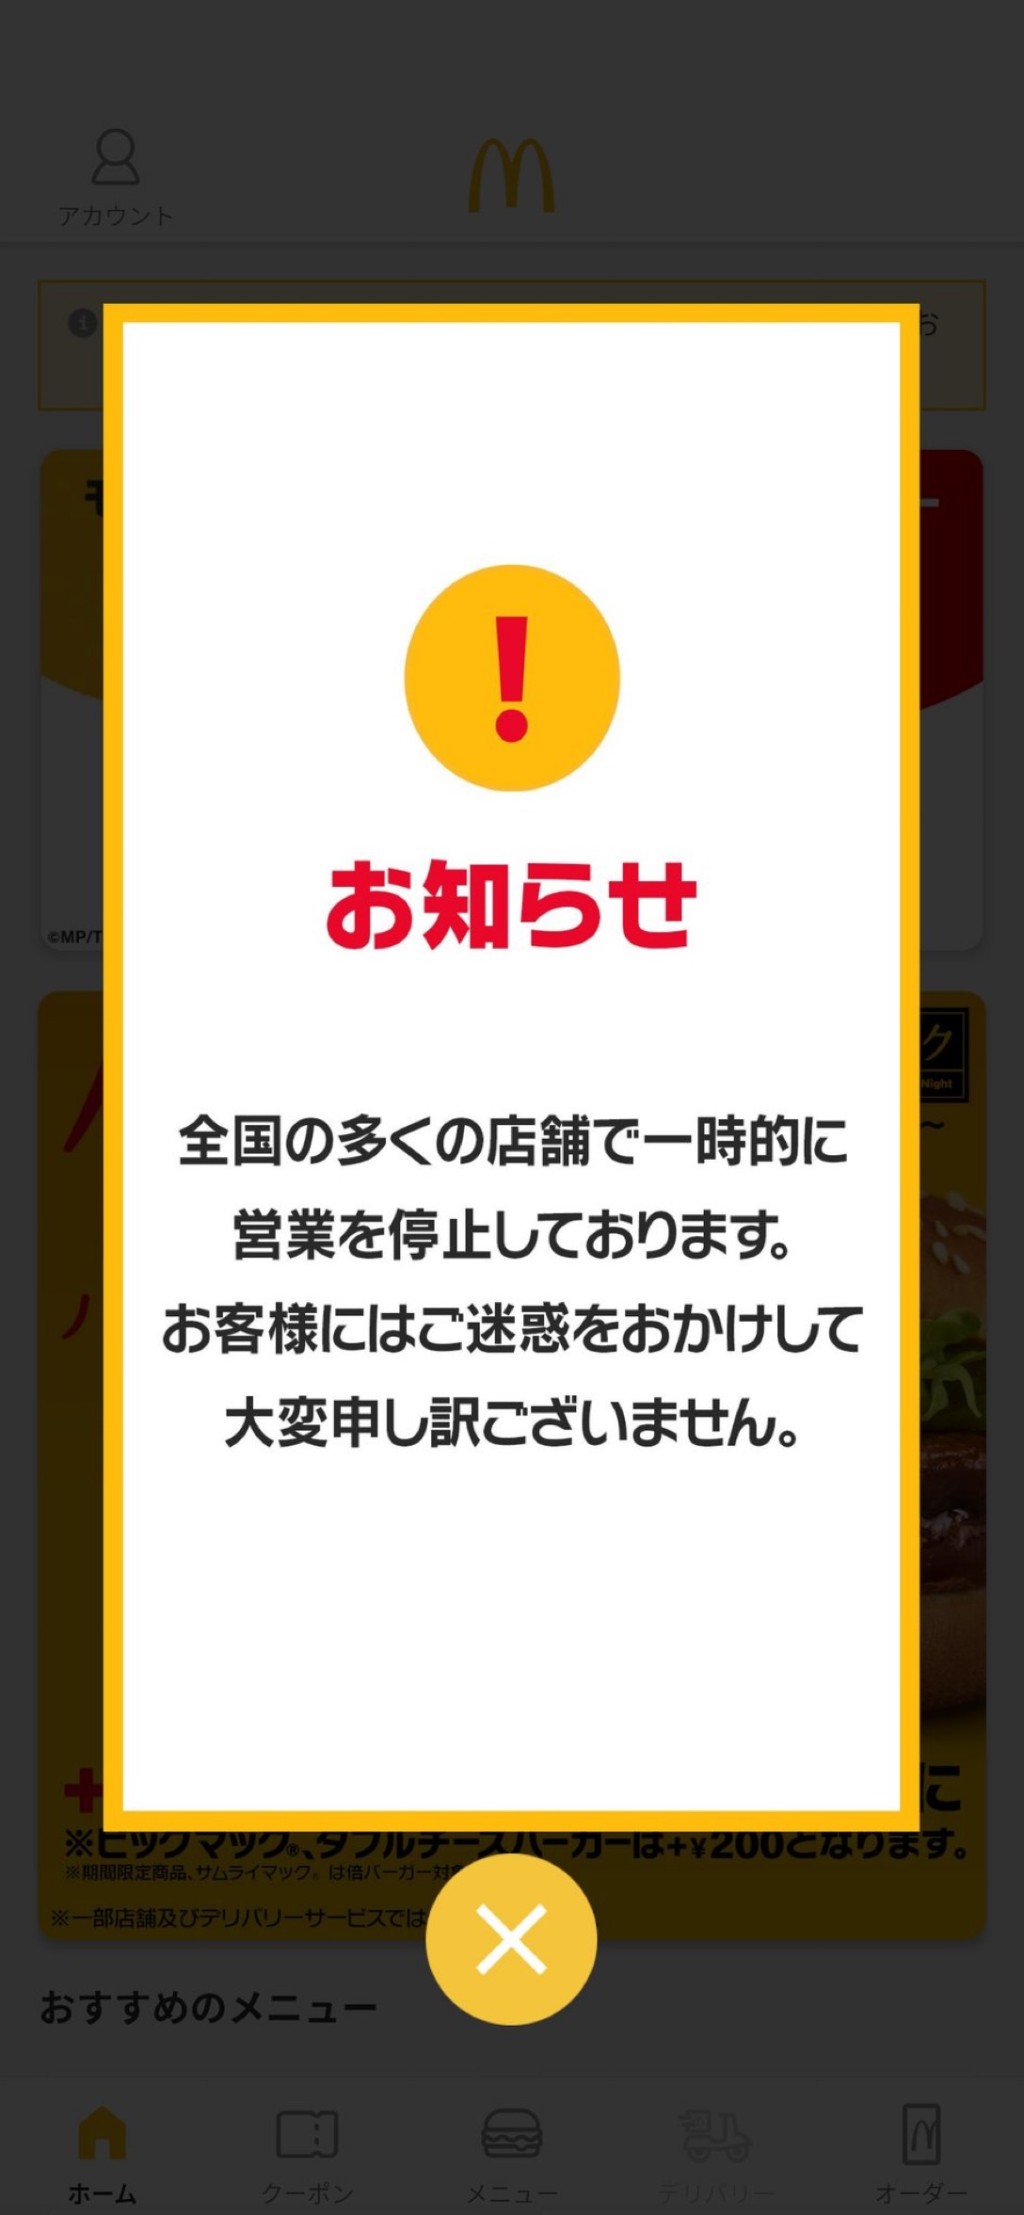 網民展示日本麥當勞手機程式的大字故障告示。 